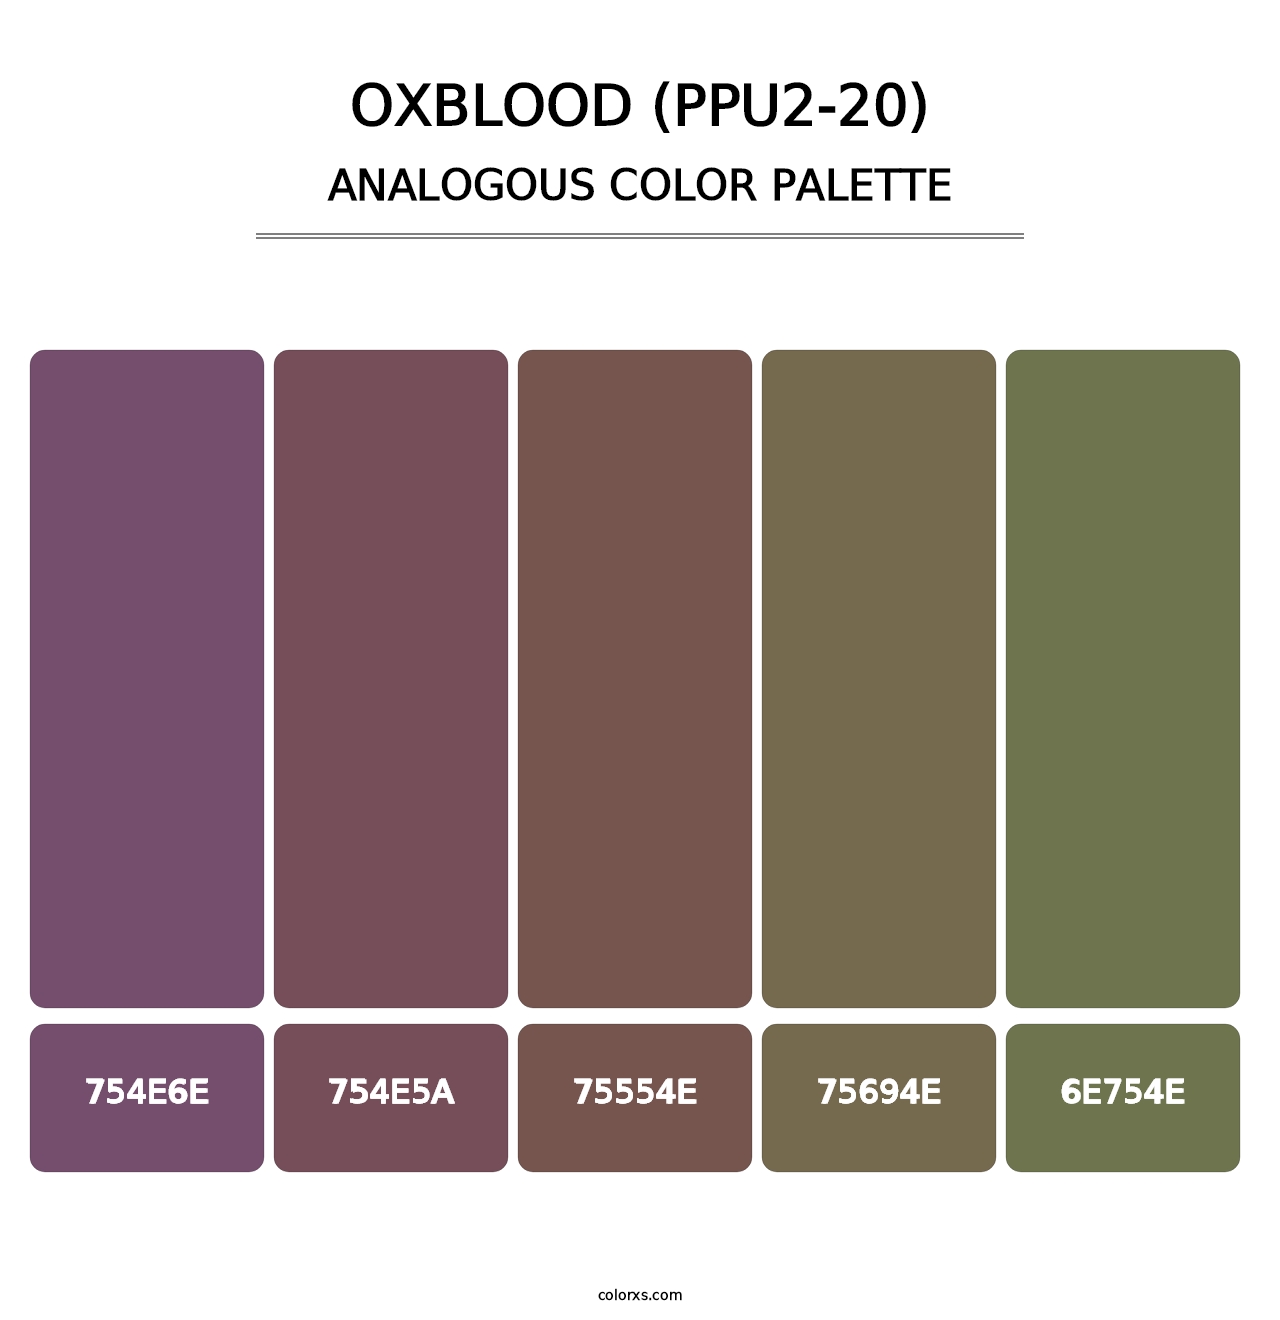 Oxblood (PPU2-20) - Analogous Color Palette